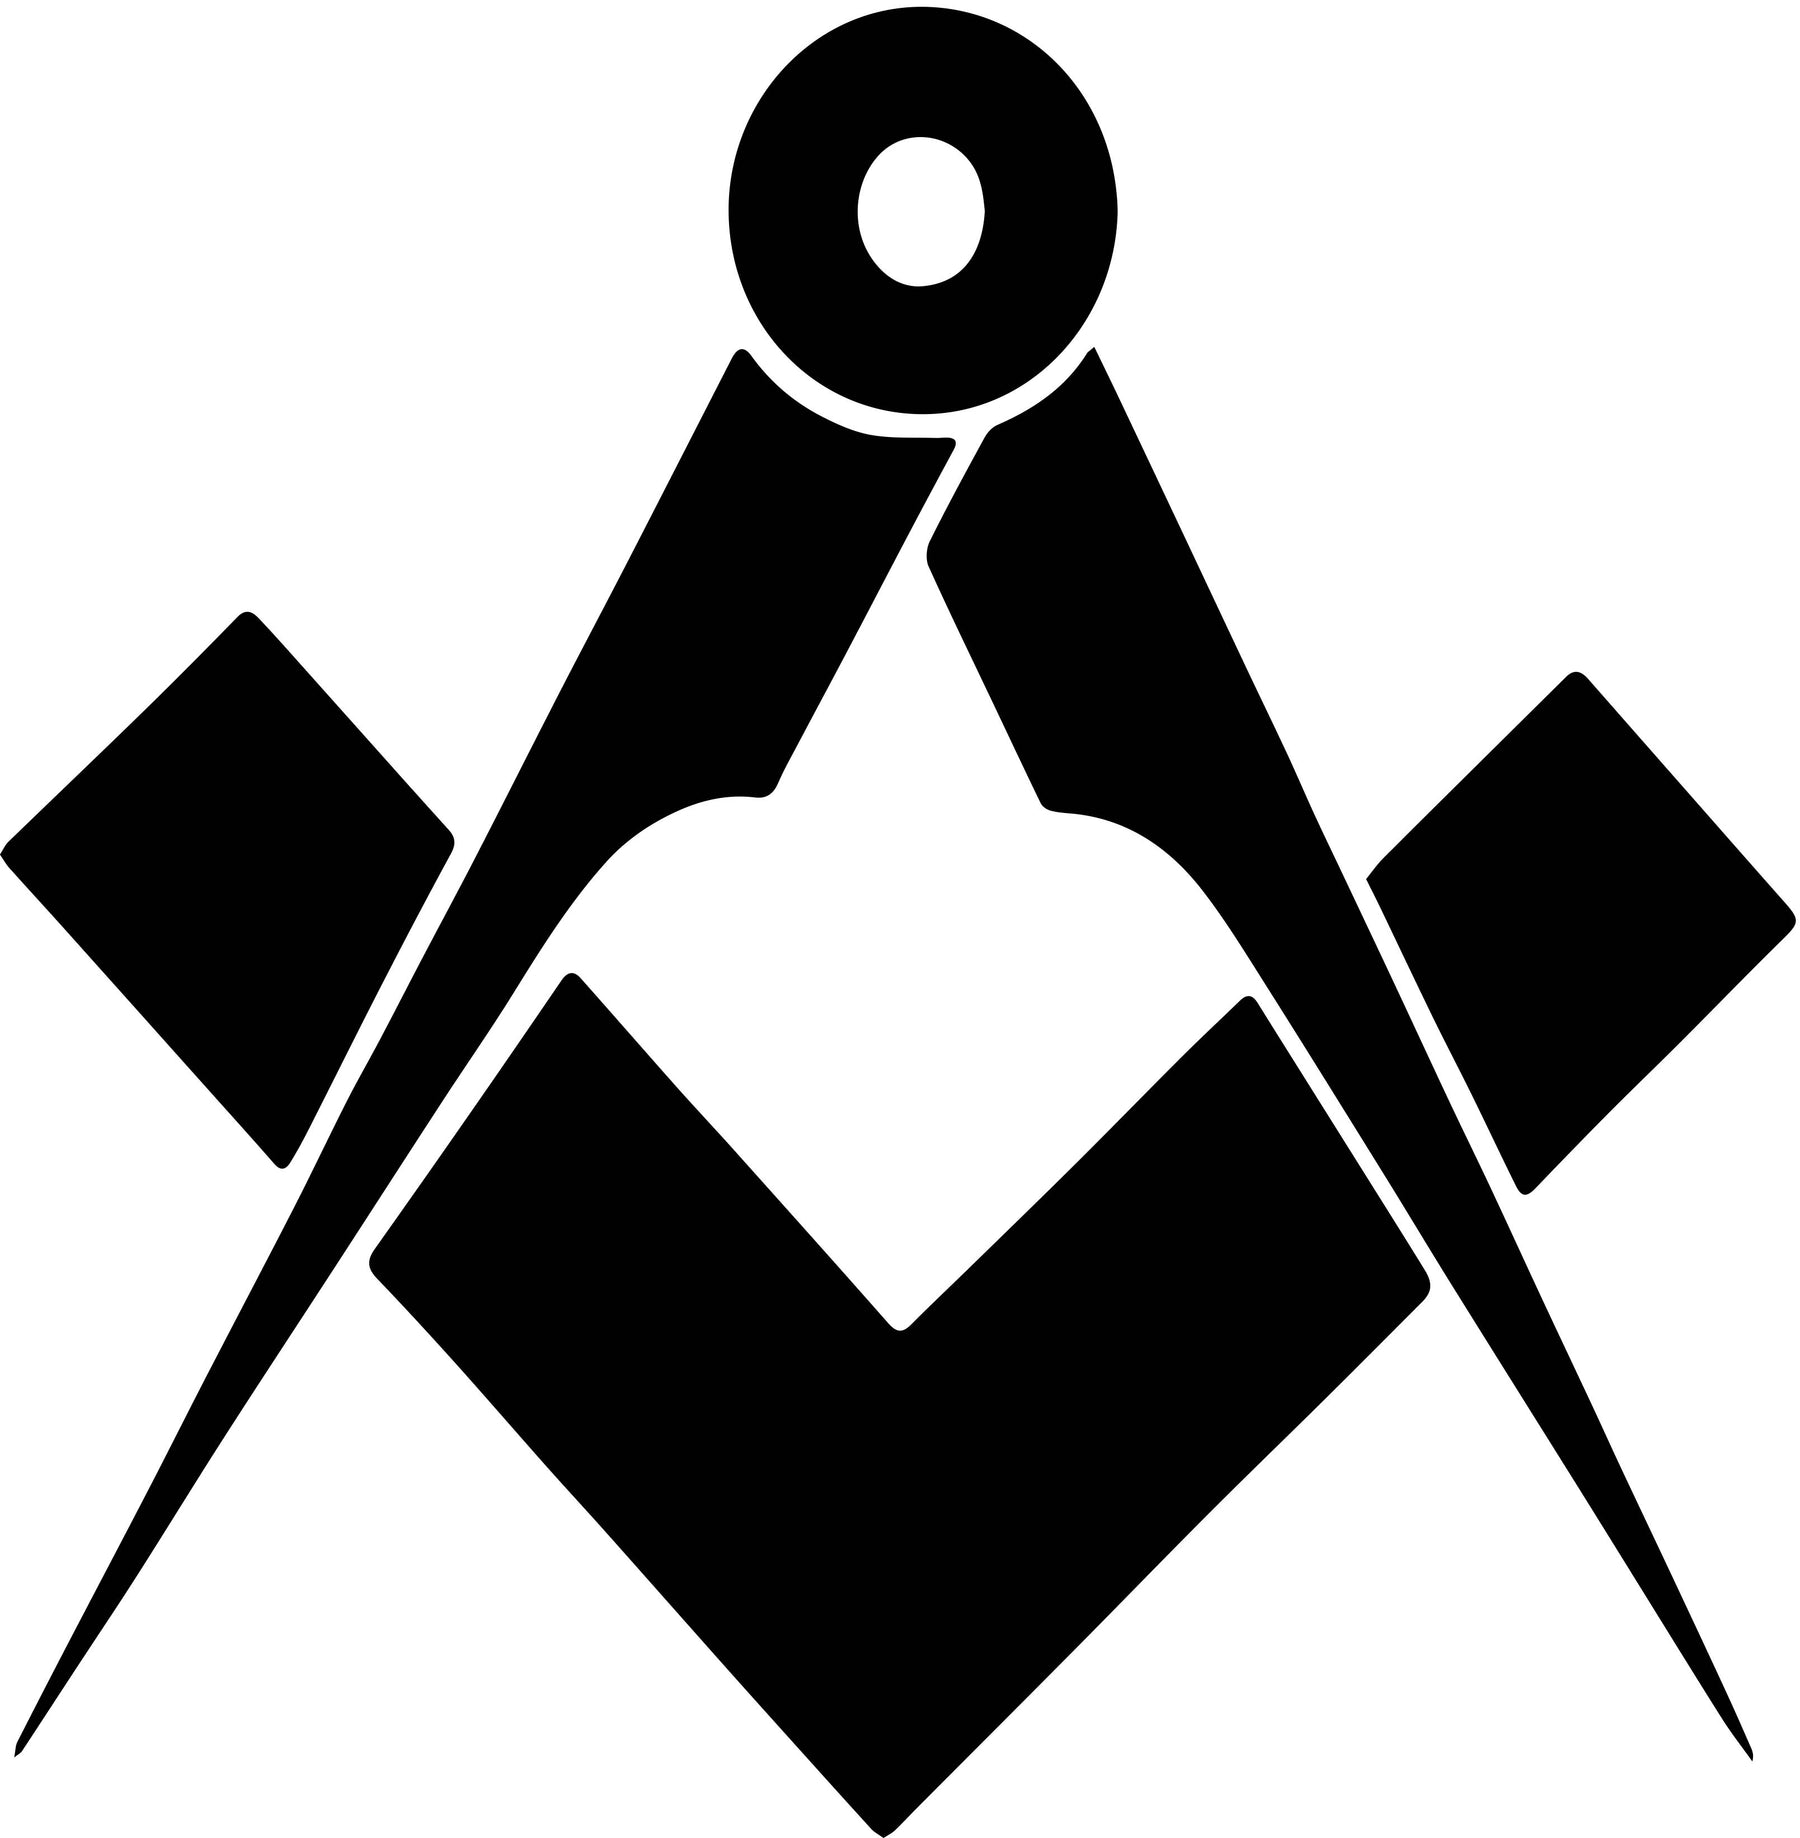 Master Mason Blue Lodge Chess Set - Hand Workmanship Patterns - Bricks Masons